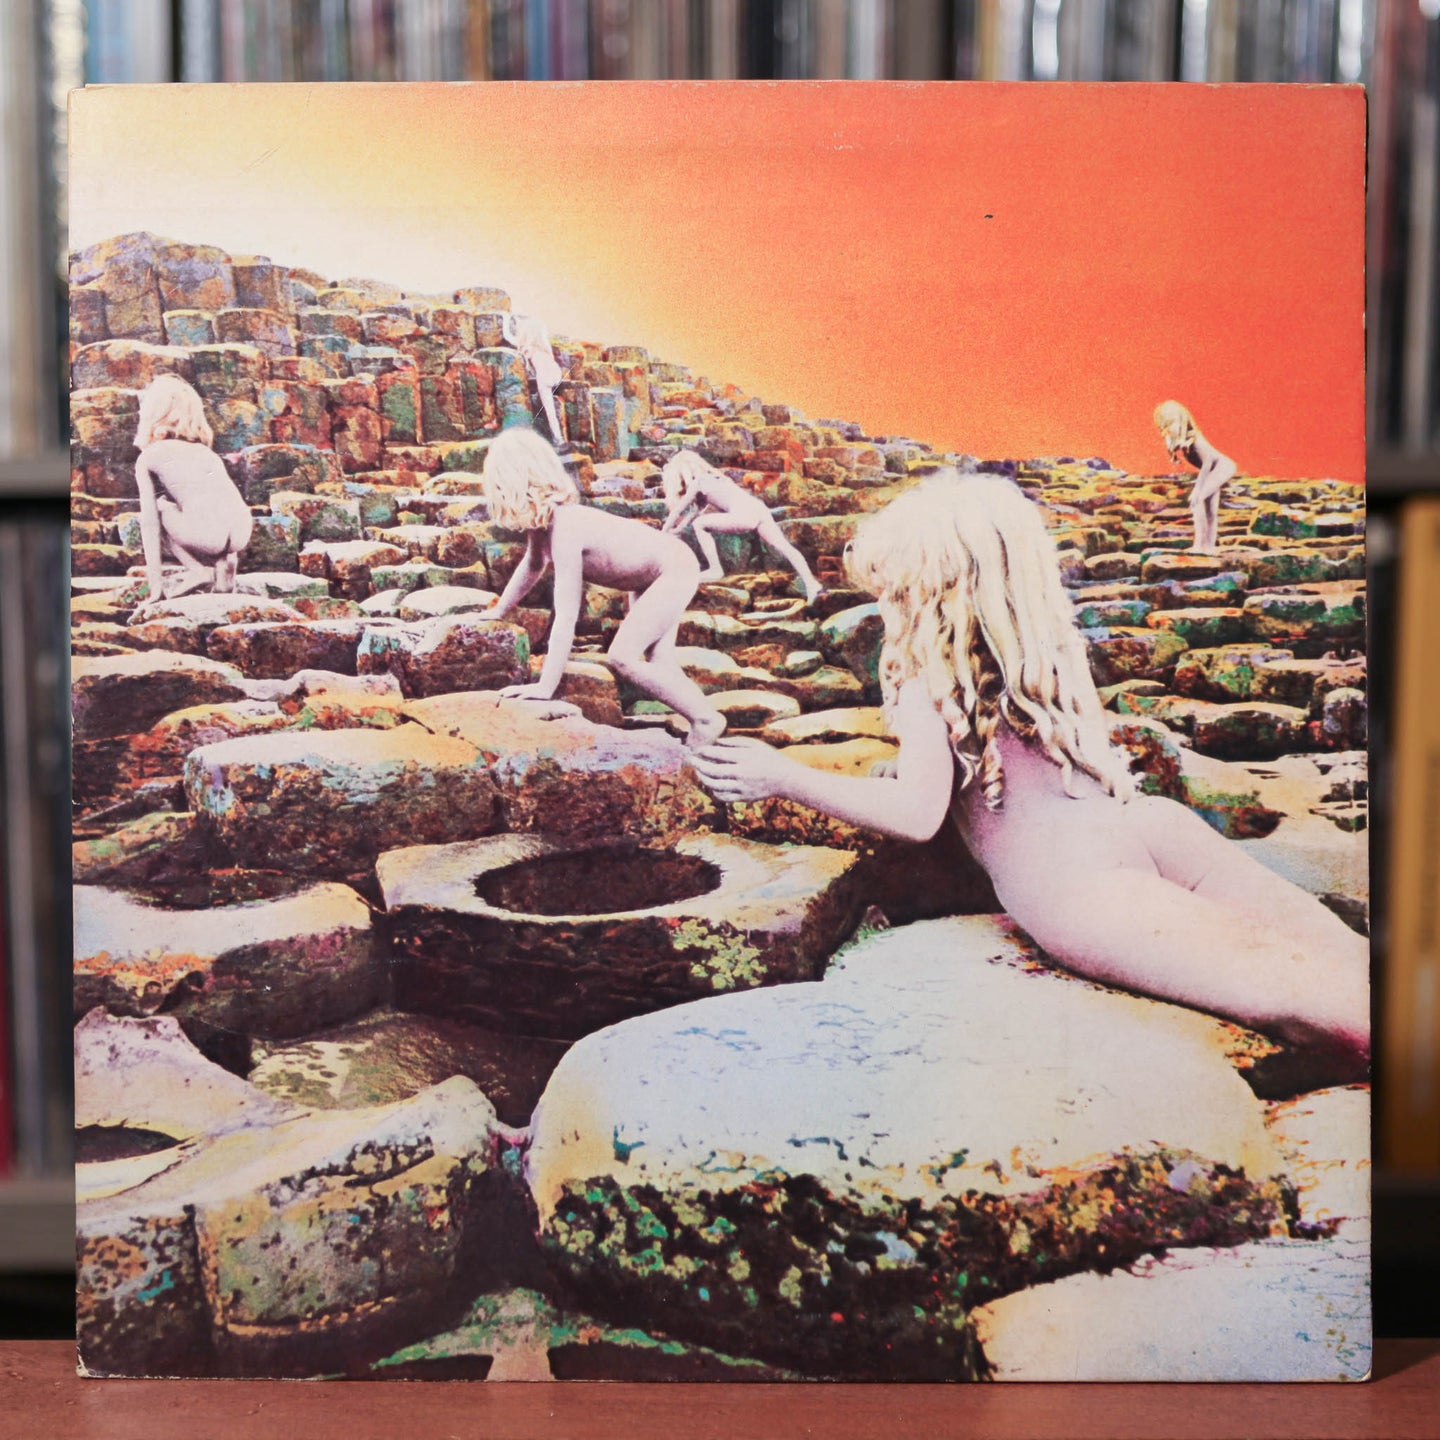 Led Zeppelin - Houses of the Holy - 1977 Atlantic, VG+/VG